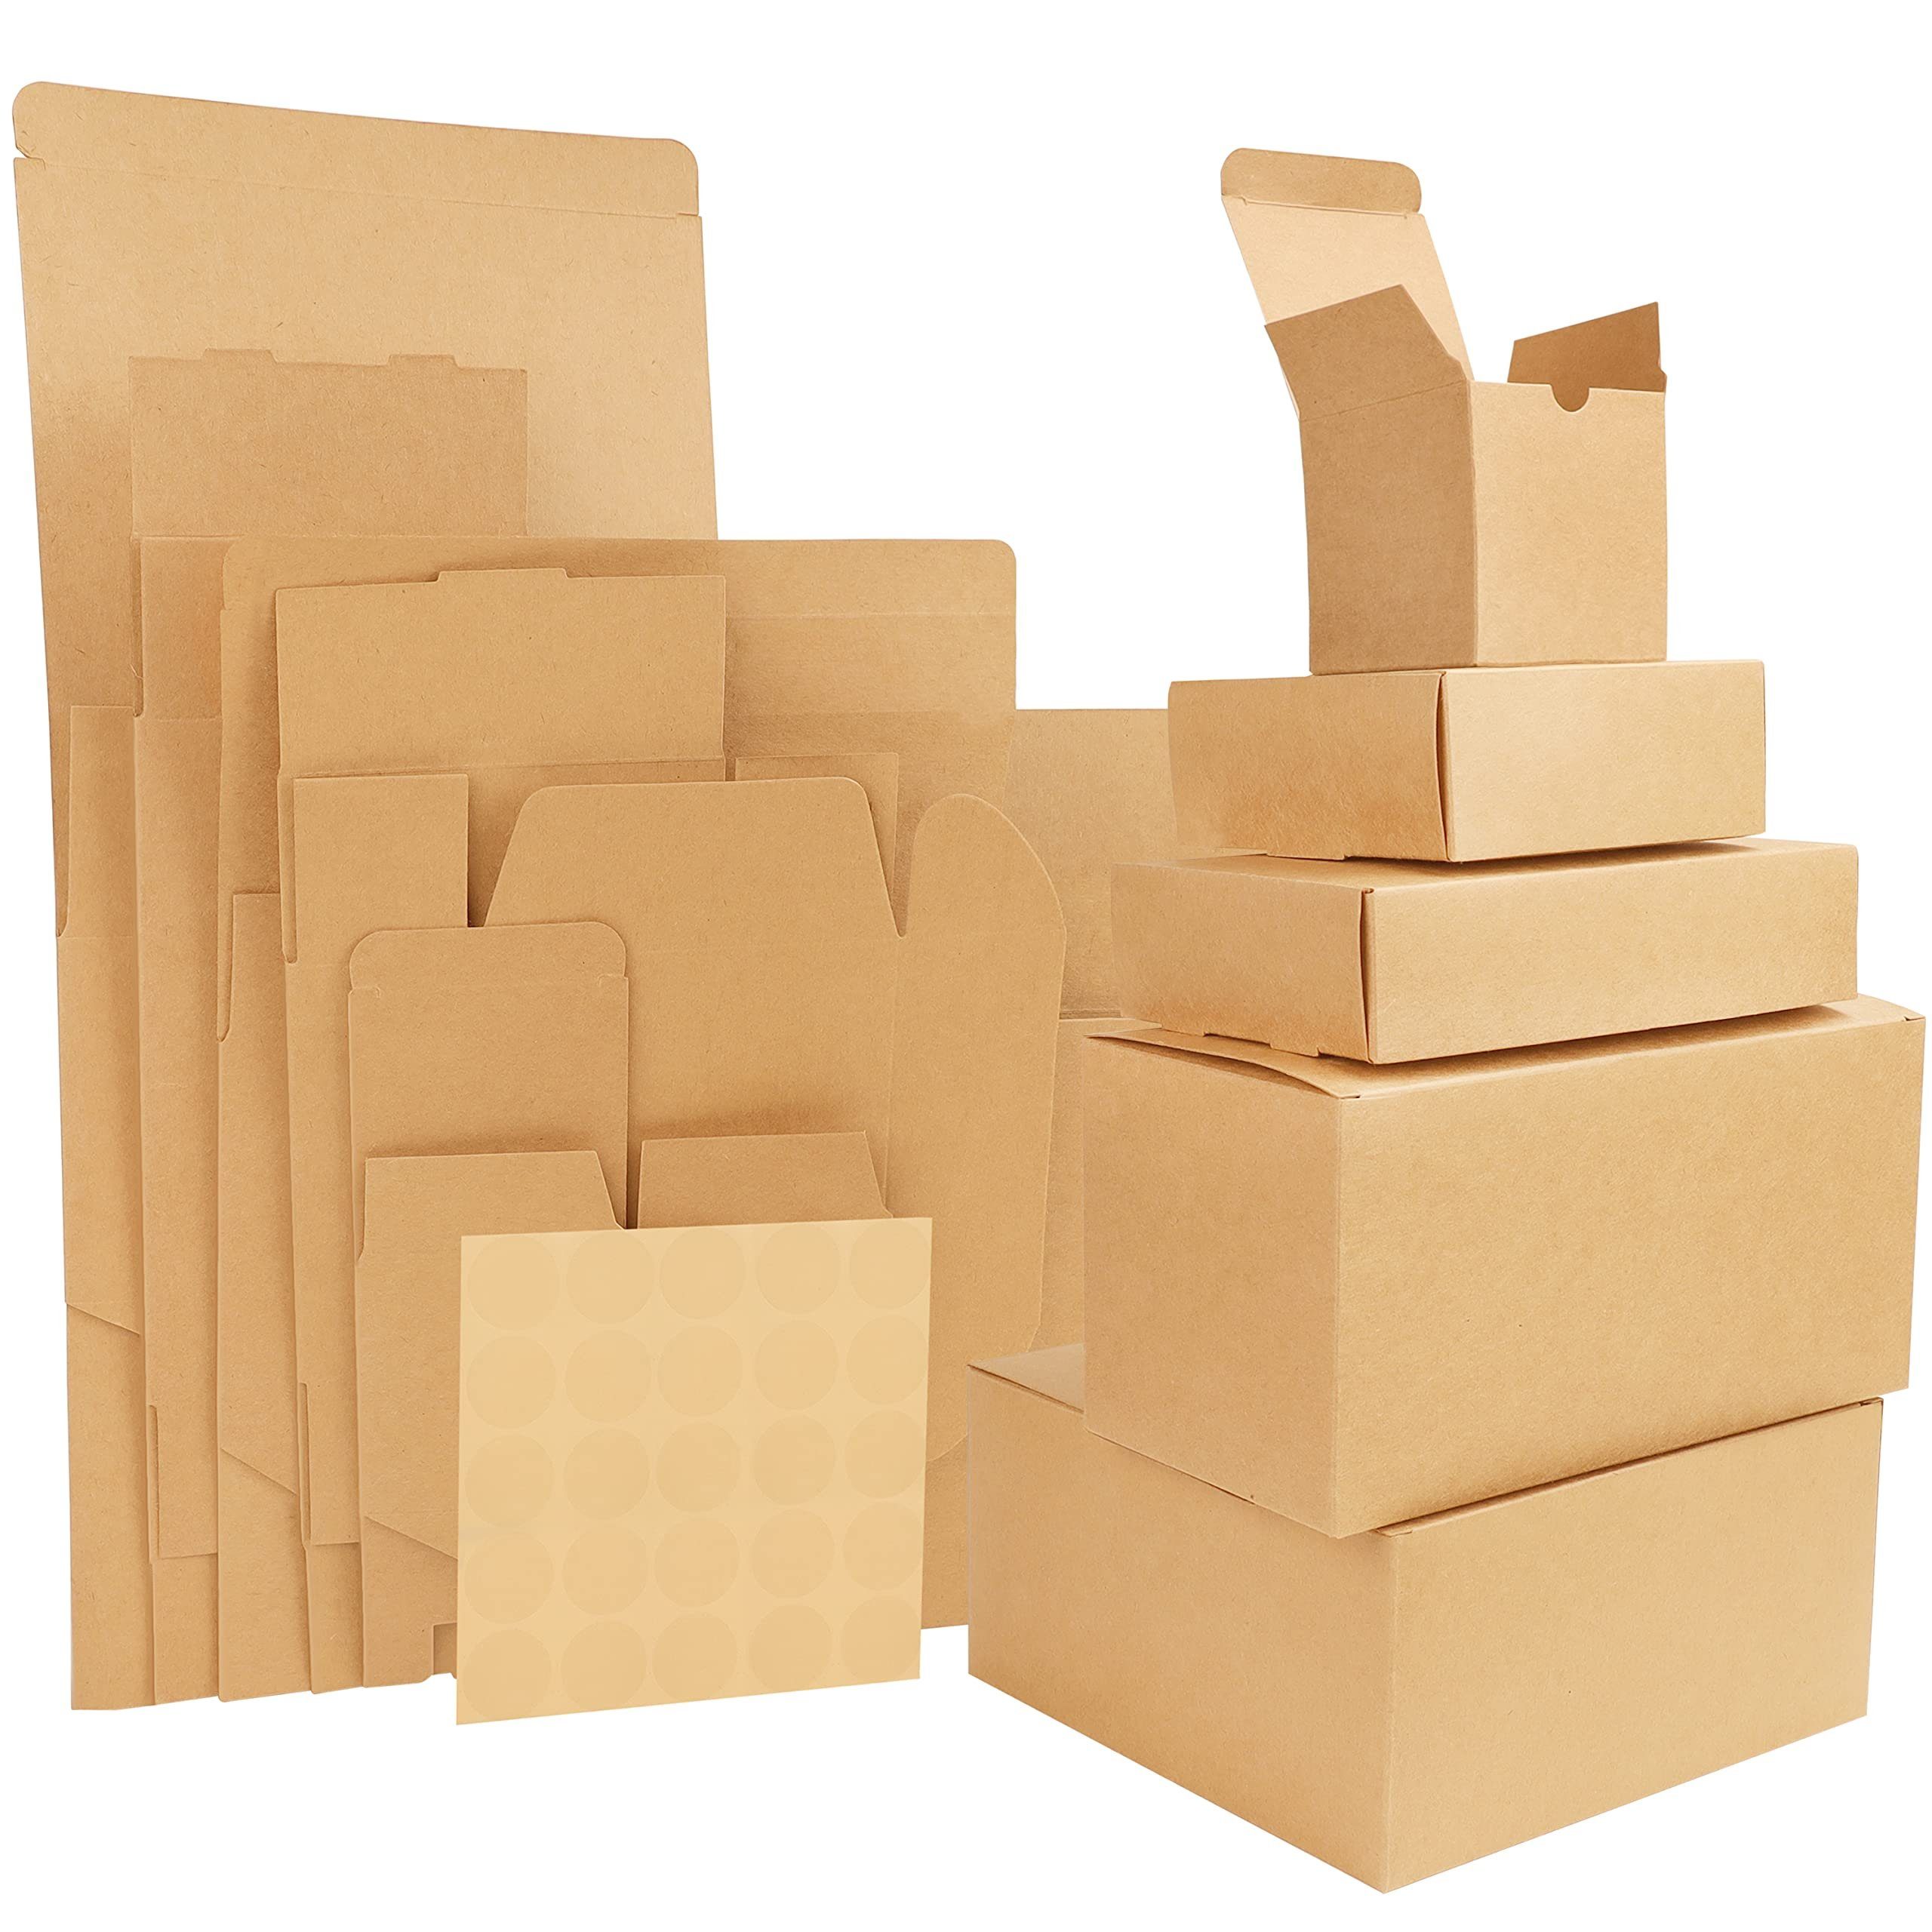 Belle Vous Geschenkbox 50 Stk. Karton Geschenkboxen Braun - 5 Größen -  Einfach aufzubauen, 50 Stück Pappkartons Geschenkverpackungen Braun - 5  Größen